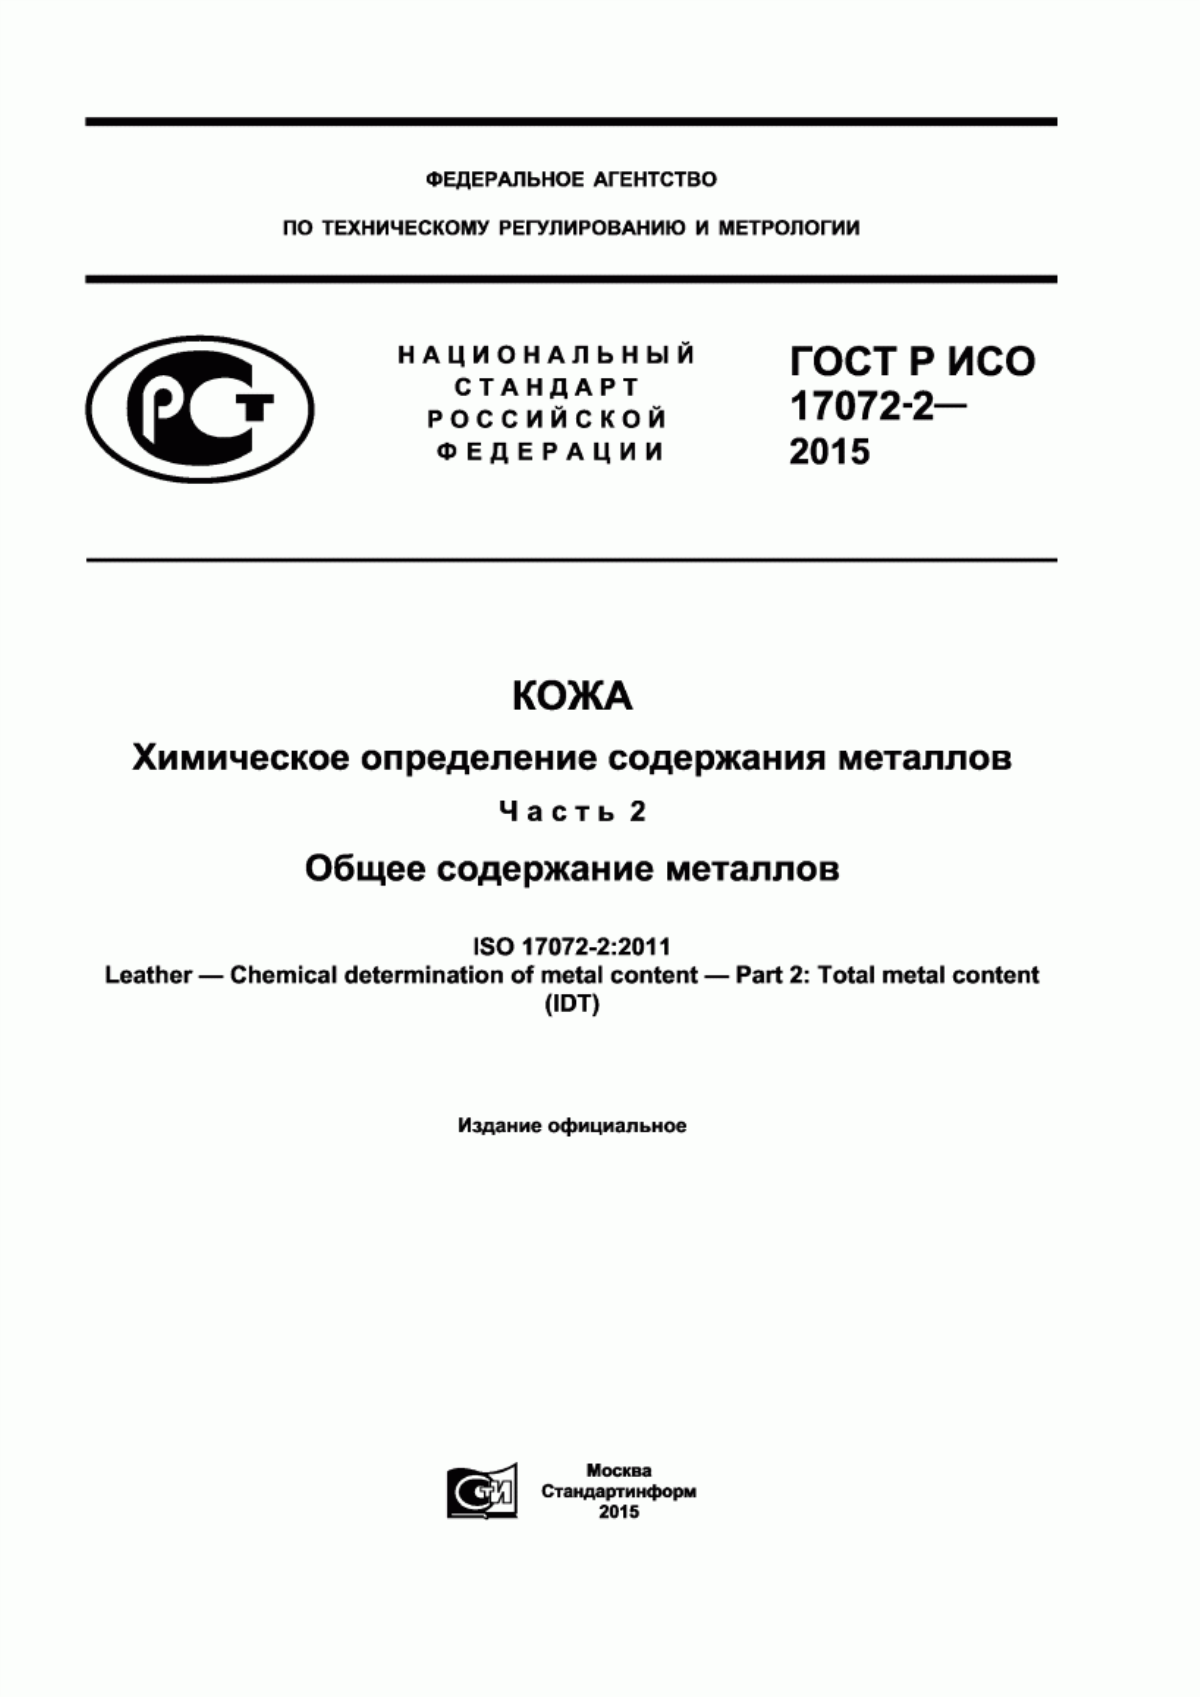 ГОСТ Р ИСО 17072-2-2015 Кожа. Химическое определение содержания металлов. Часть 2. Общее содержание металлов